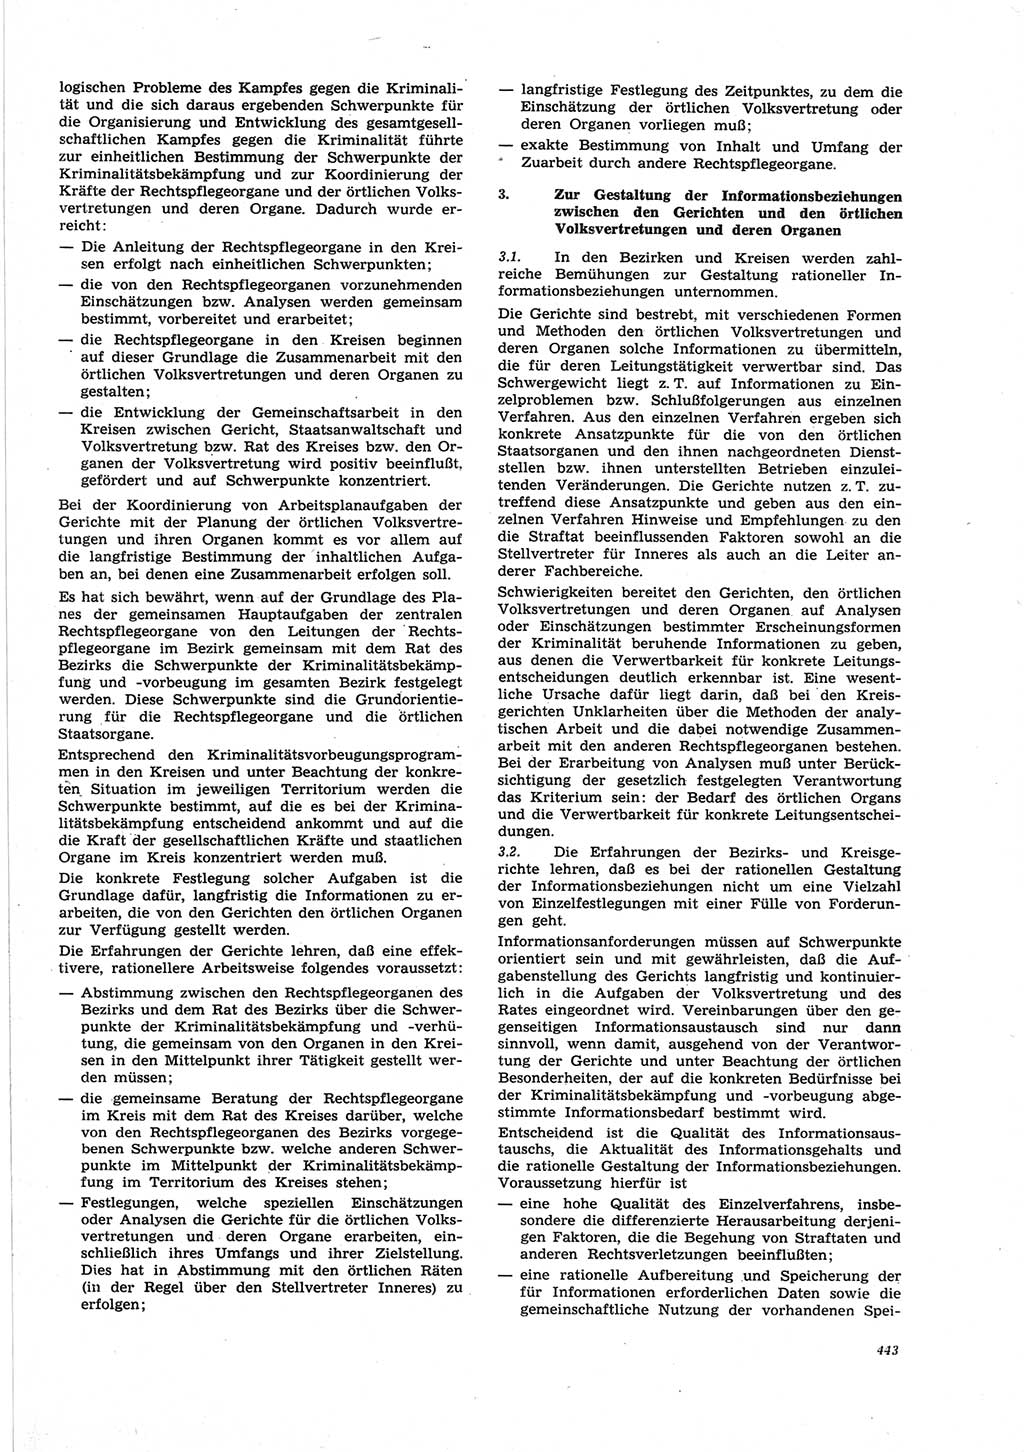 Neue Justiz (NJ), Zeitschrift für Recht und Rechtswissenschaft [Deutsche Demokratische Republik (DDR)], 25. Jahrgang 1971, Seite 443 (NJ DDR 1971, S. 443)